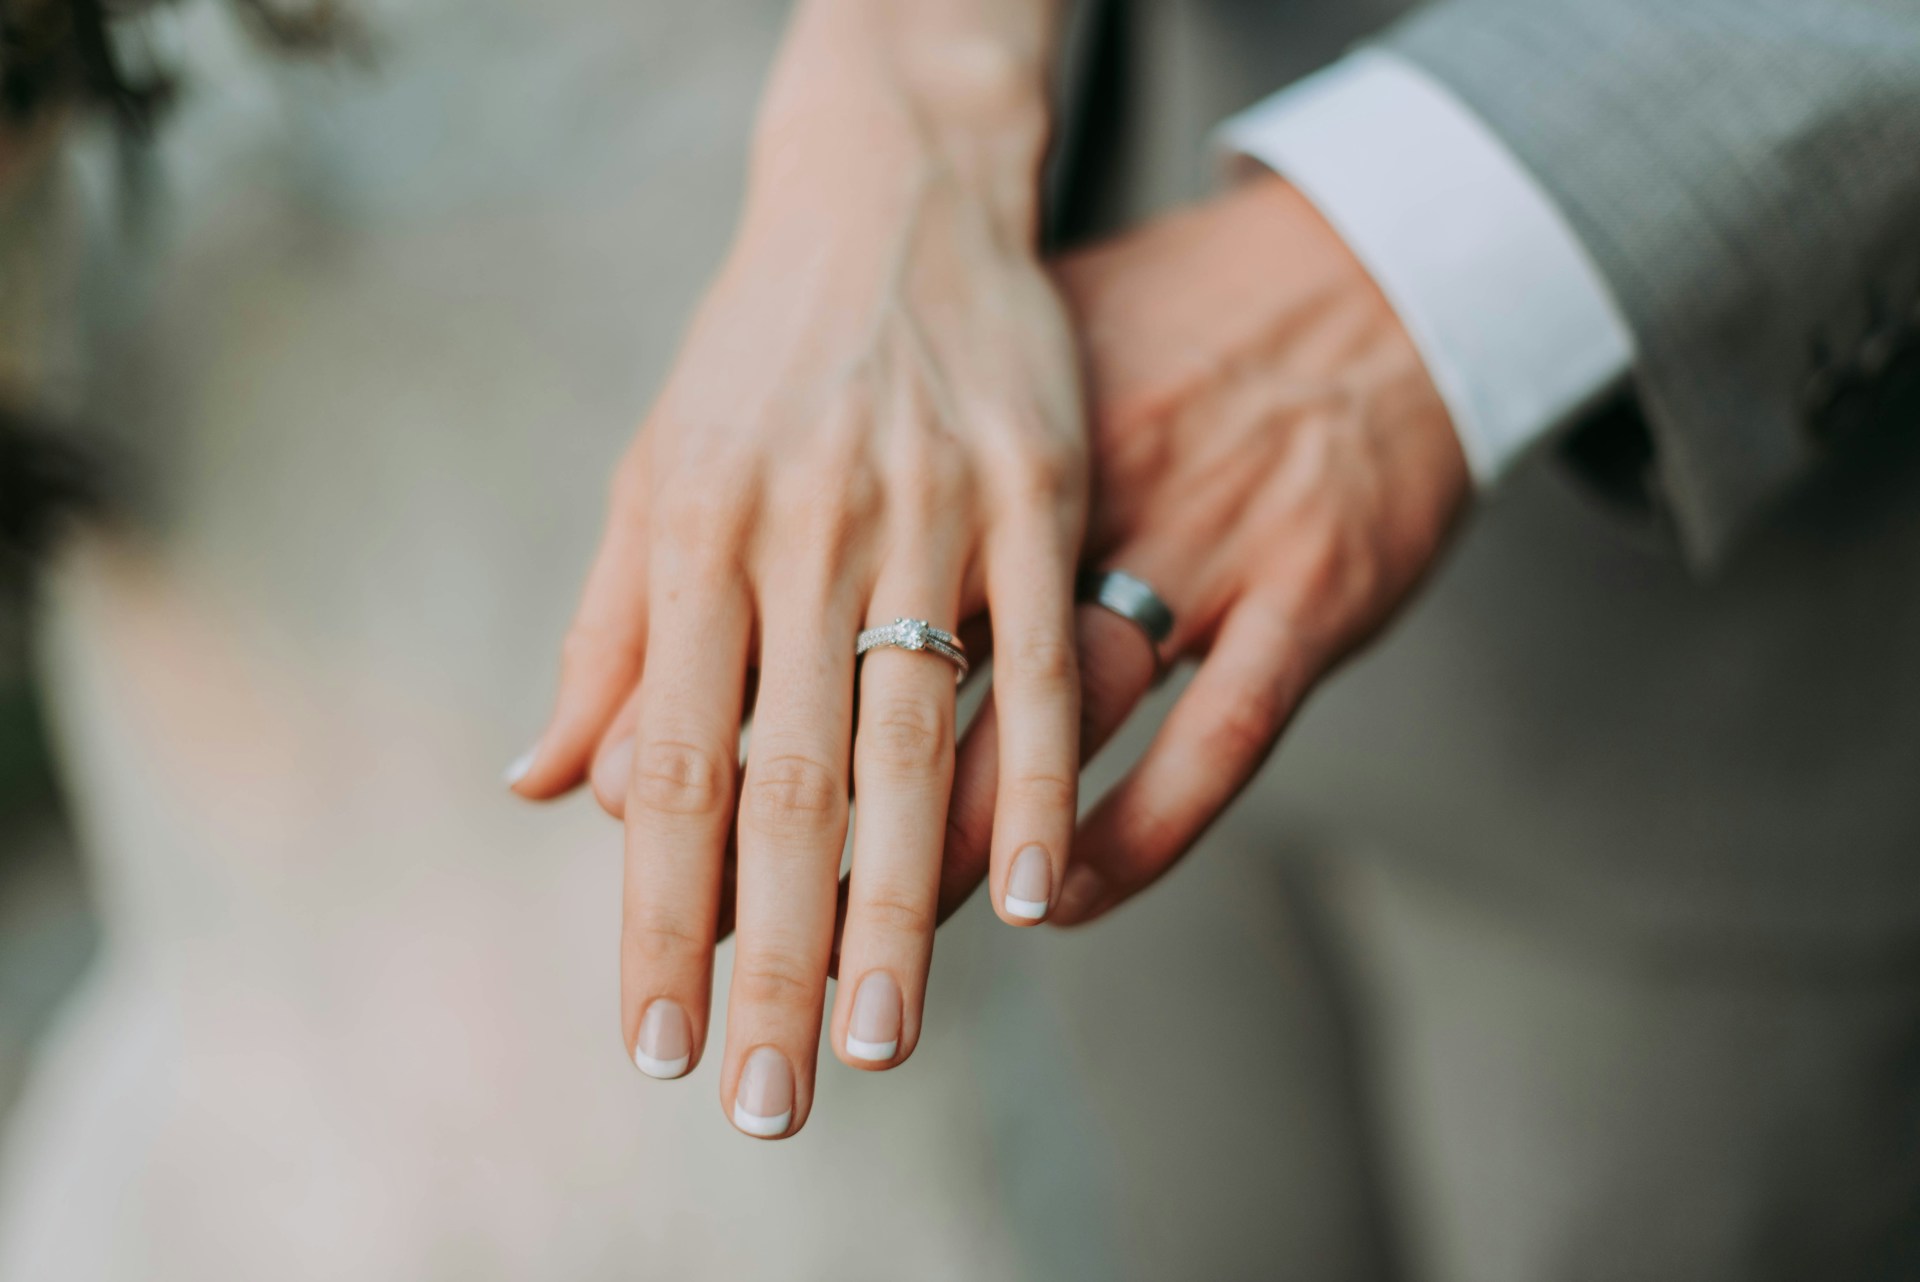 A házasulandó pár hozzáállásán is múlik a házasságkötés bensőségessége